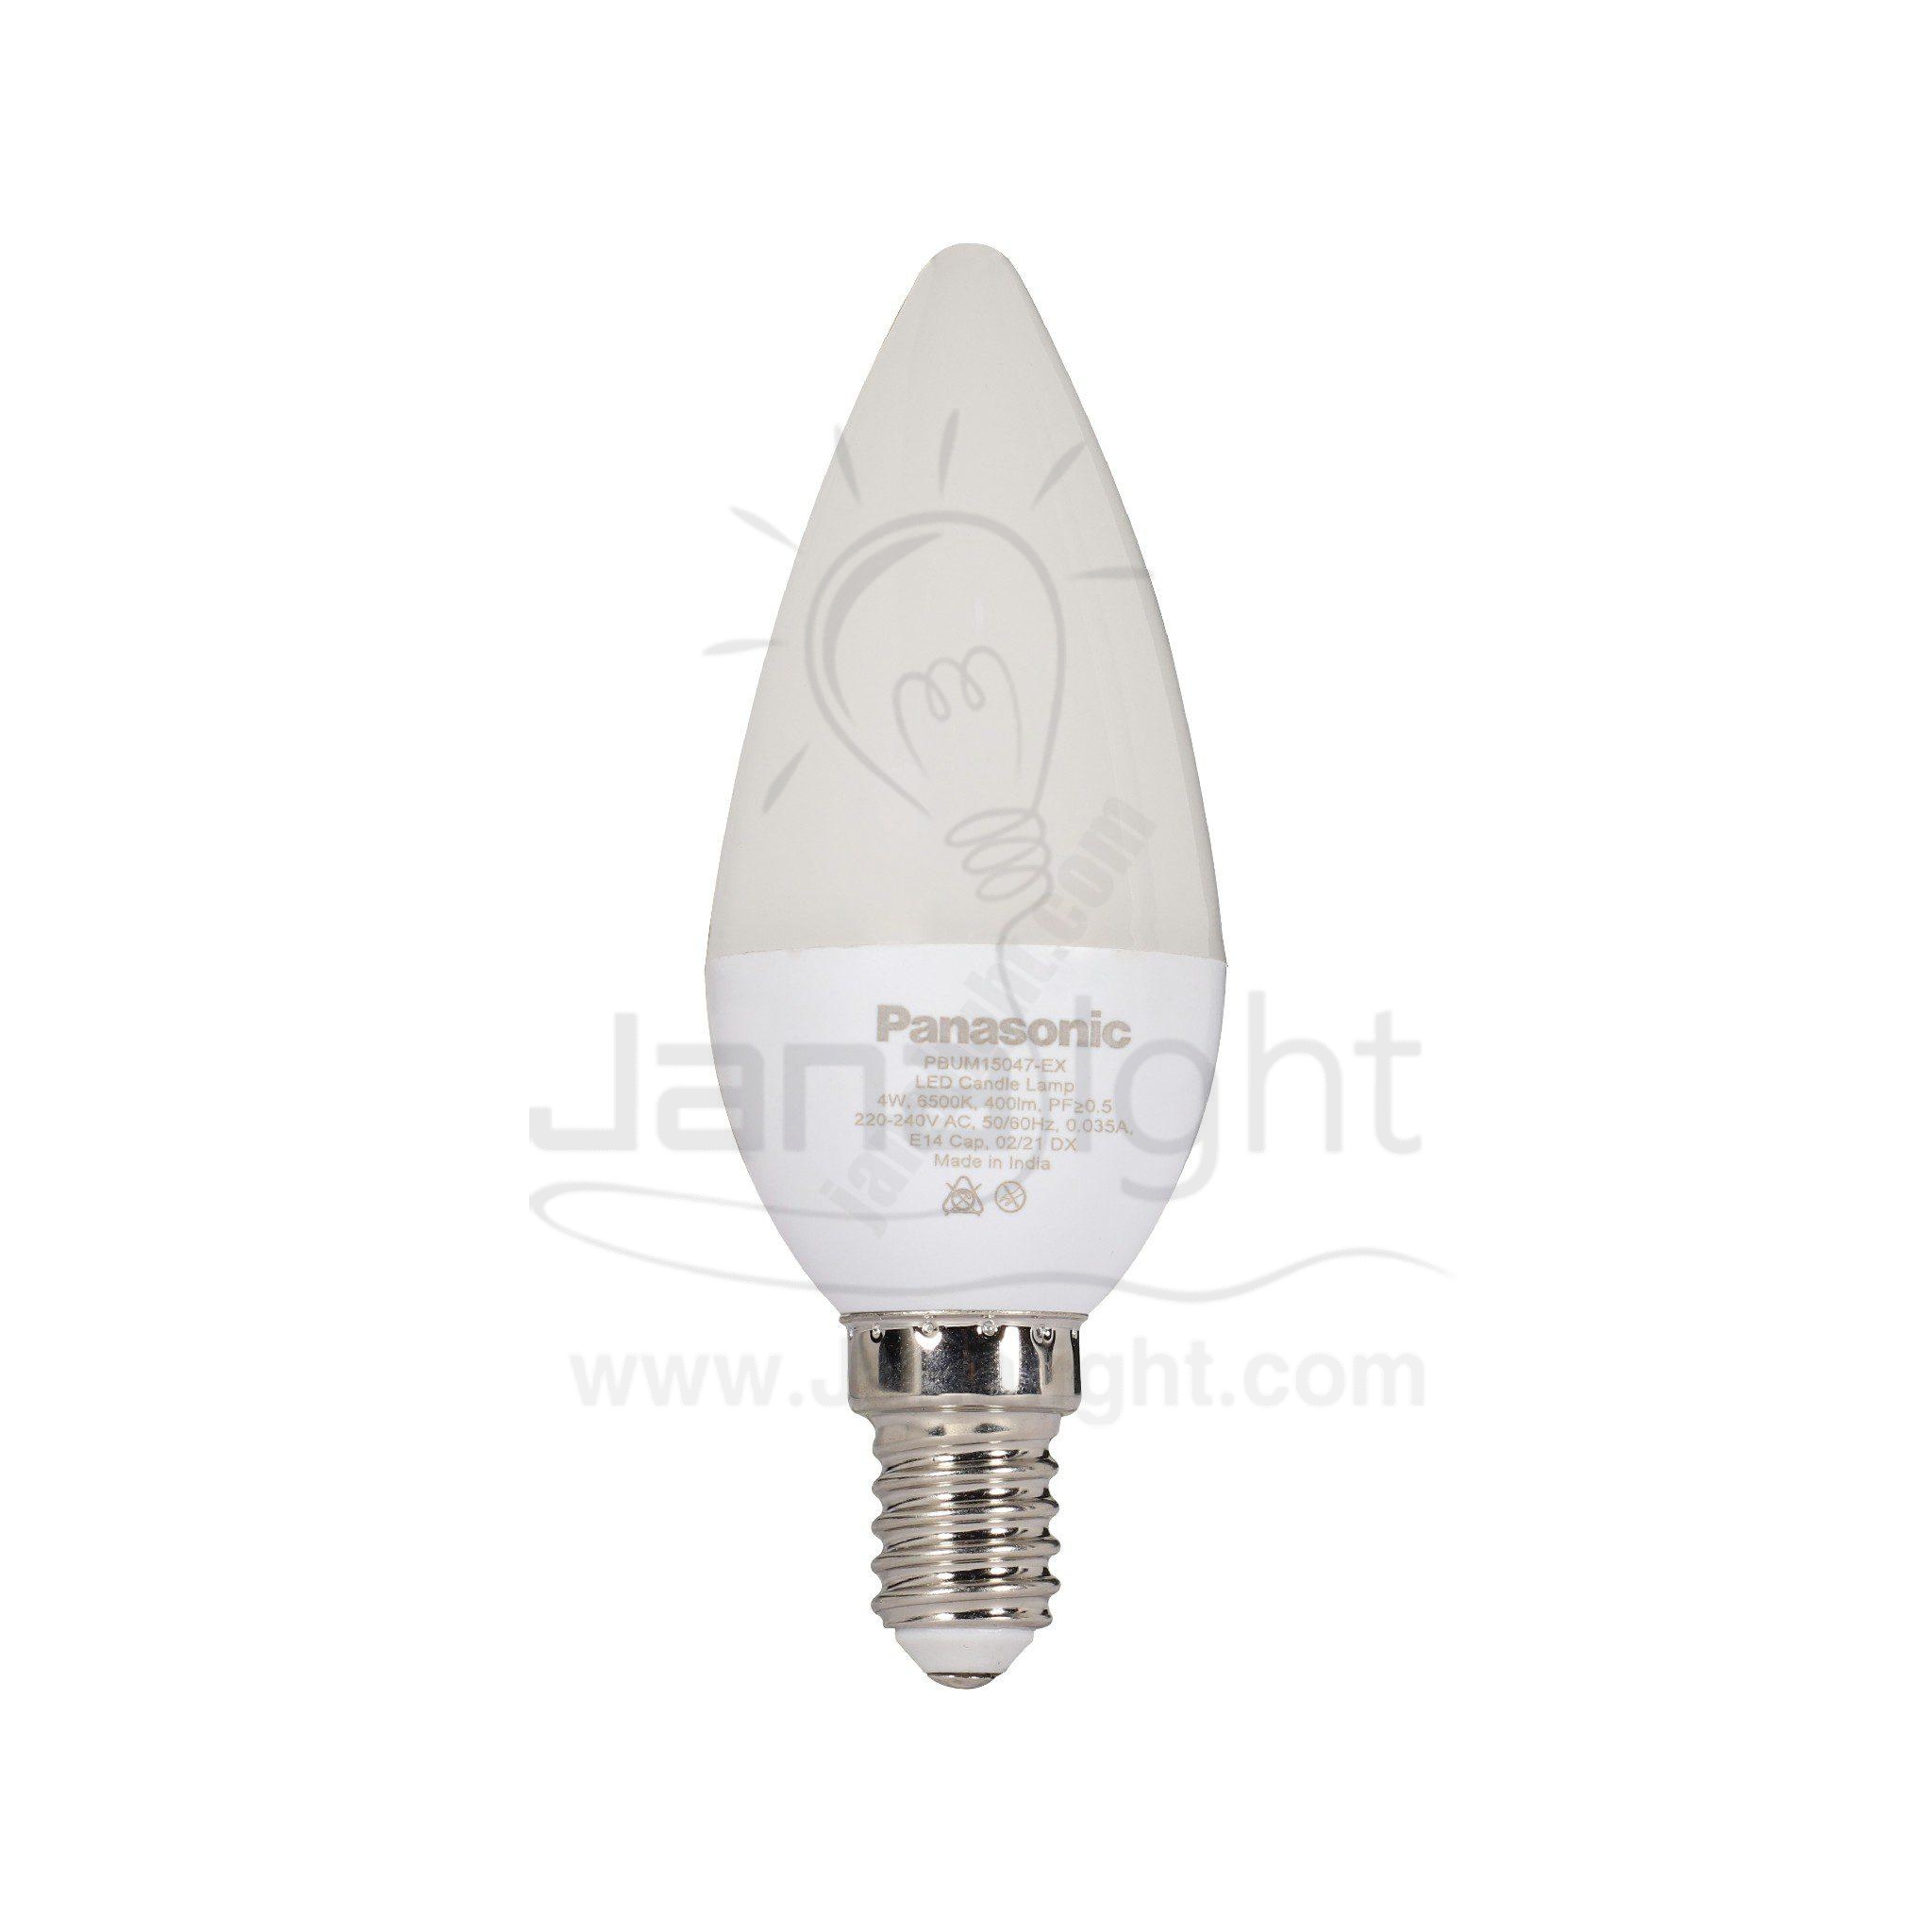 لمبة بلحة باناسونيك لد 4 وات ابيض مسنفرة M15047-EX LED candle lamp 4 watt white panasonic M15047-EX